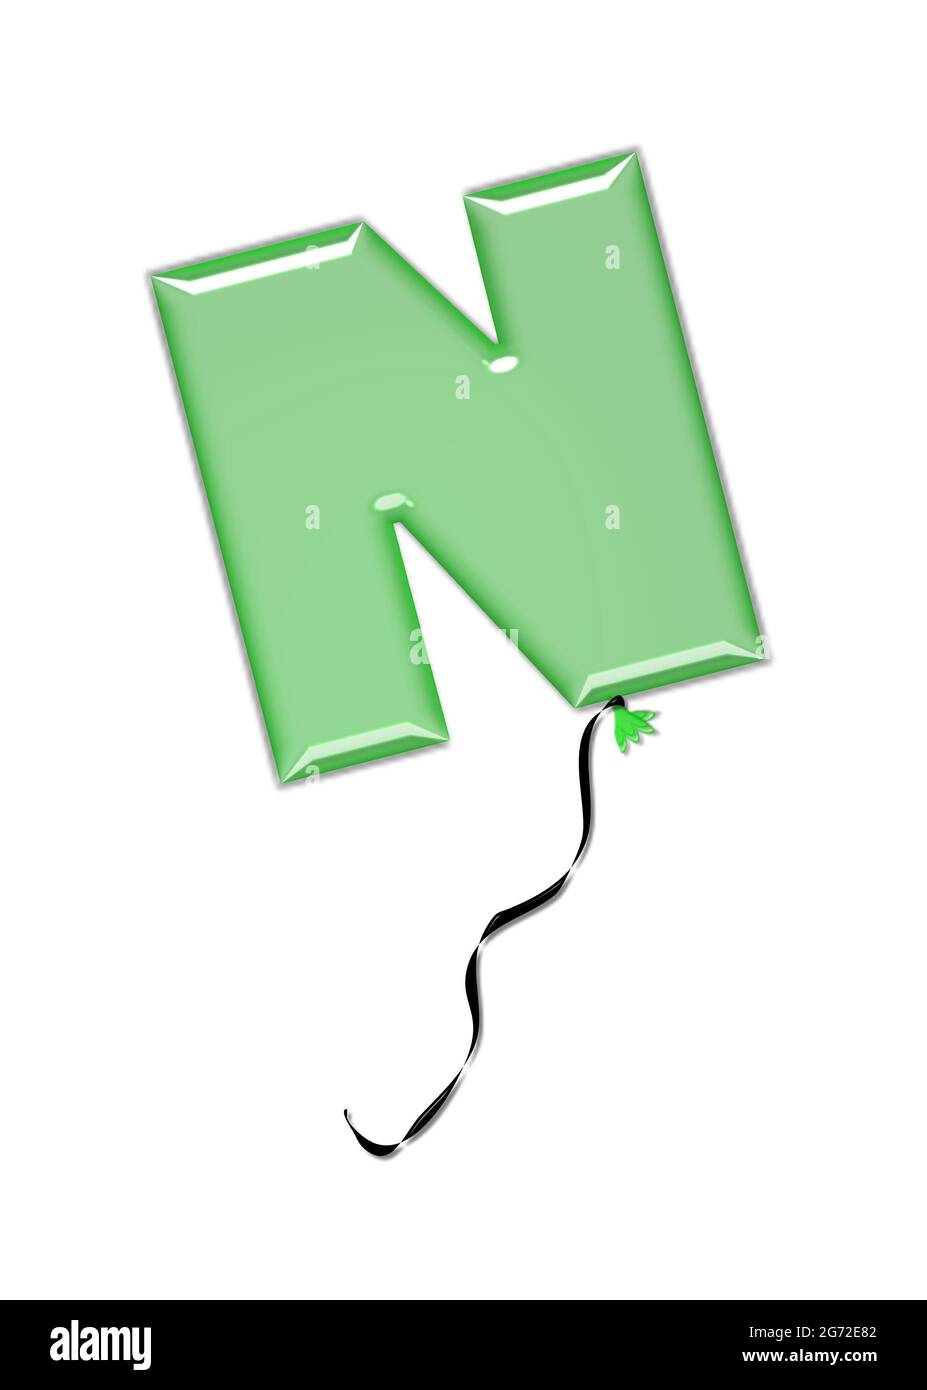 La lettera N, nel set di alfabeti Gioielli Balloon, assomiglia ad un pallone gonfiato legato al nodo con una corda nera arricciata. Le lettere, in serie, entrano Foto Stock